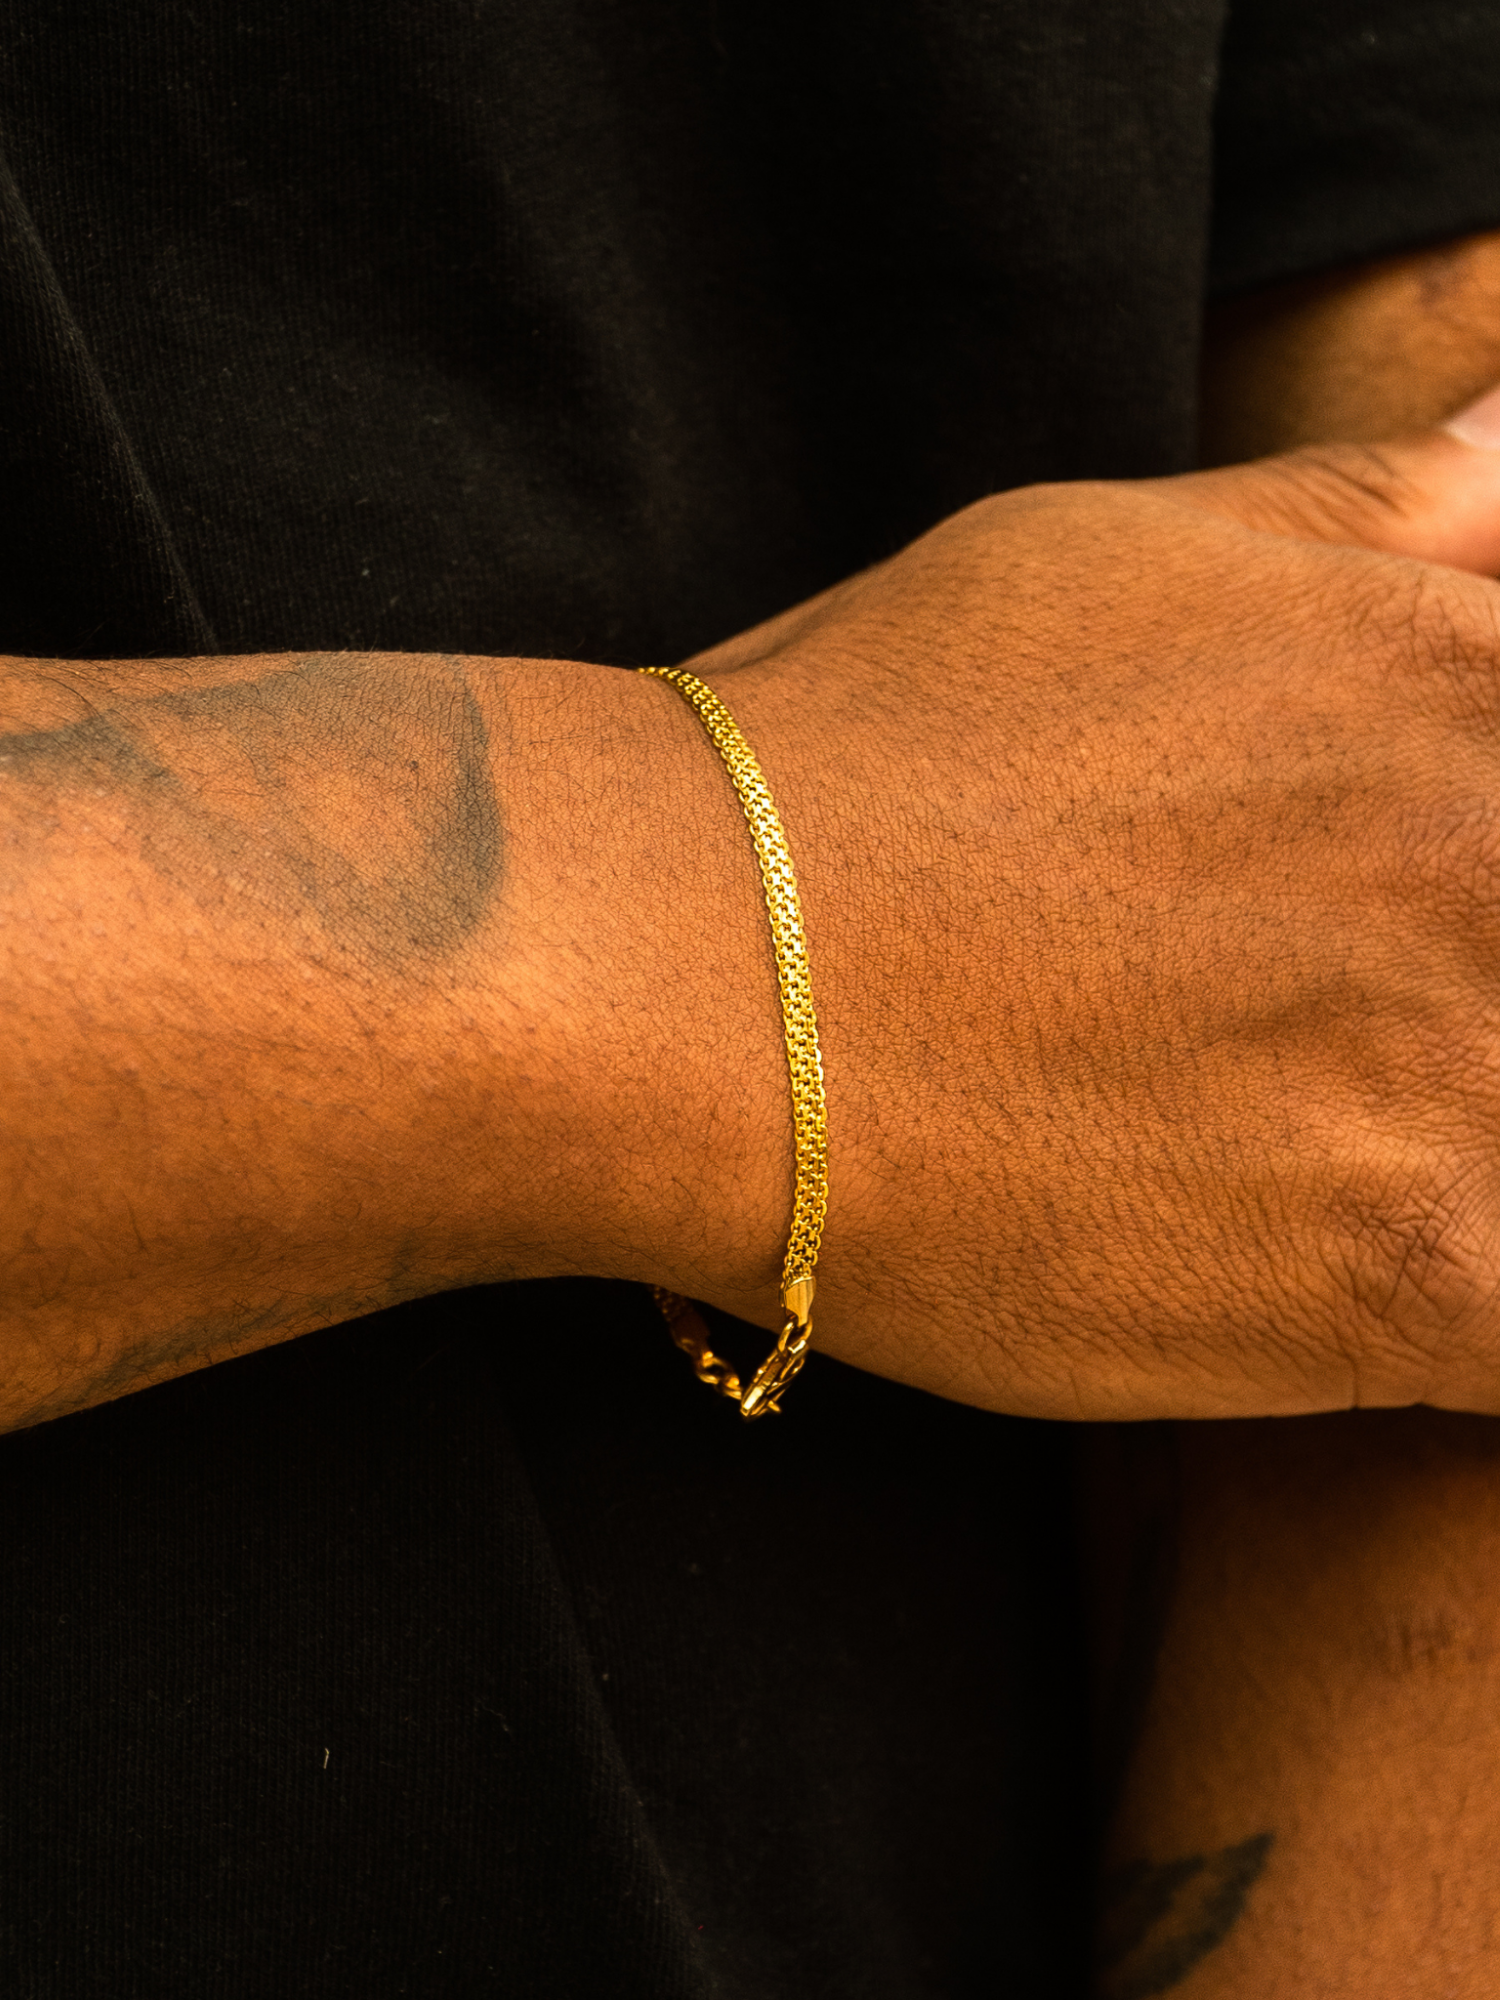 Buy Stylish Lucky Om Gold Bracelet For Men Online - Branta – Brantashop